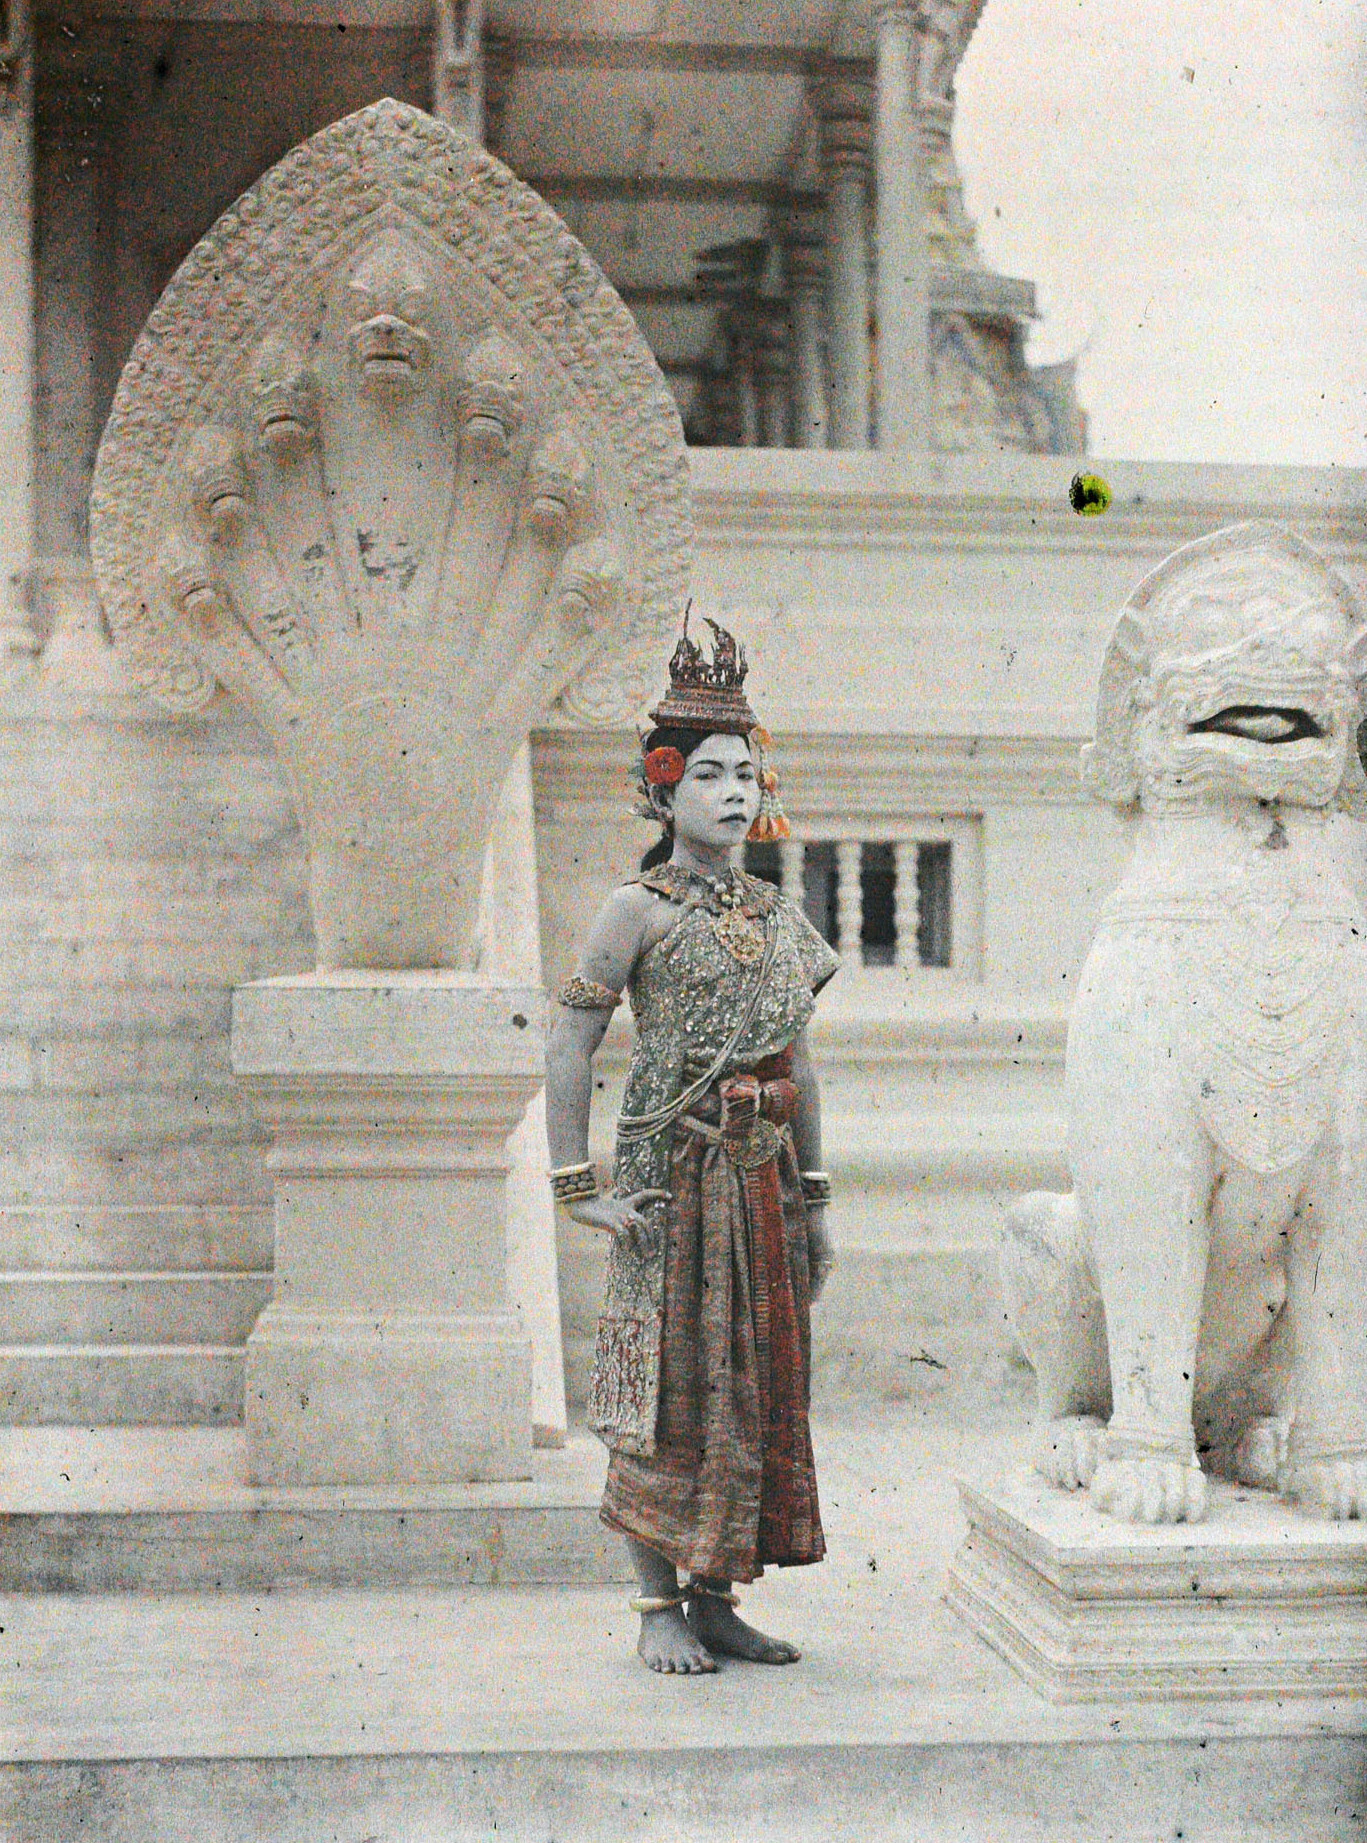 Королевский дворец, Пномпень, Камбоджа, Индокитай. Танцовщица, 1921 год, автор Леон Бизи (автохром)